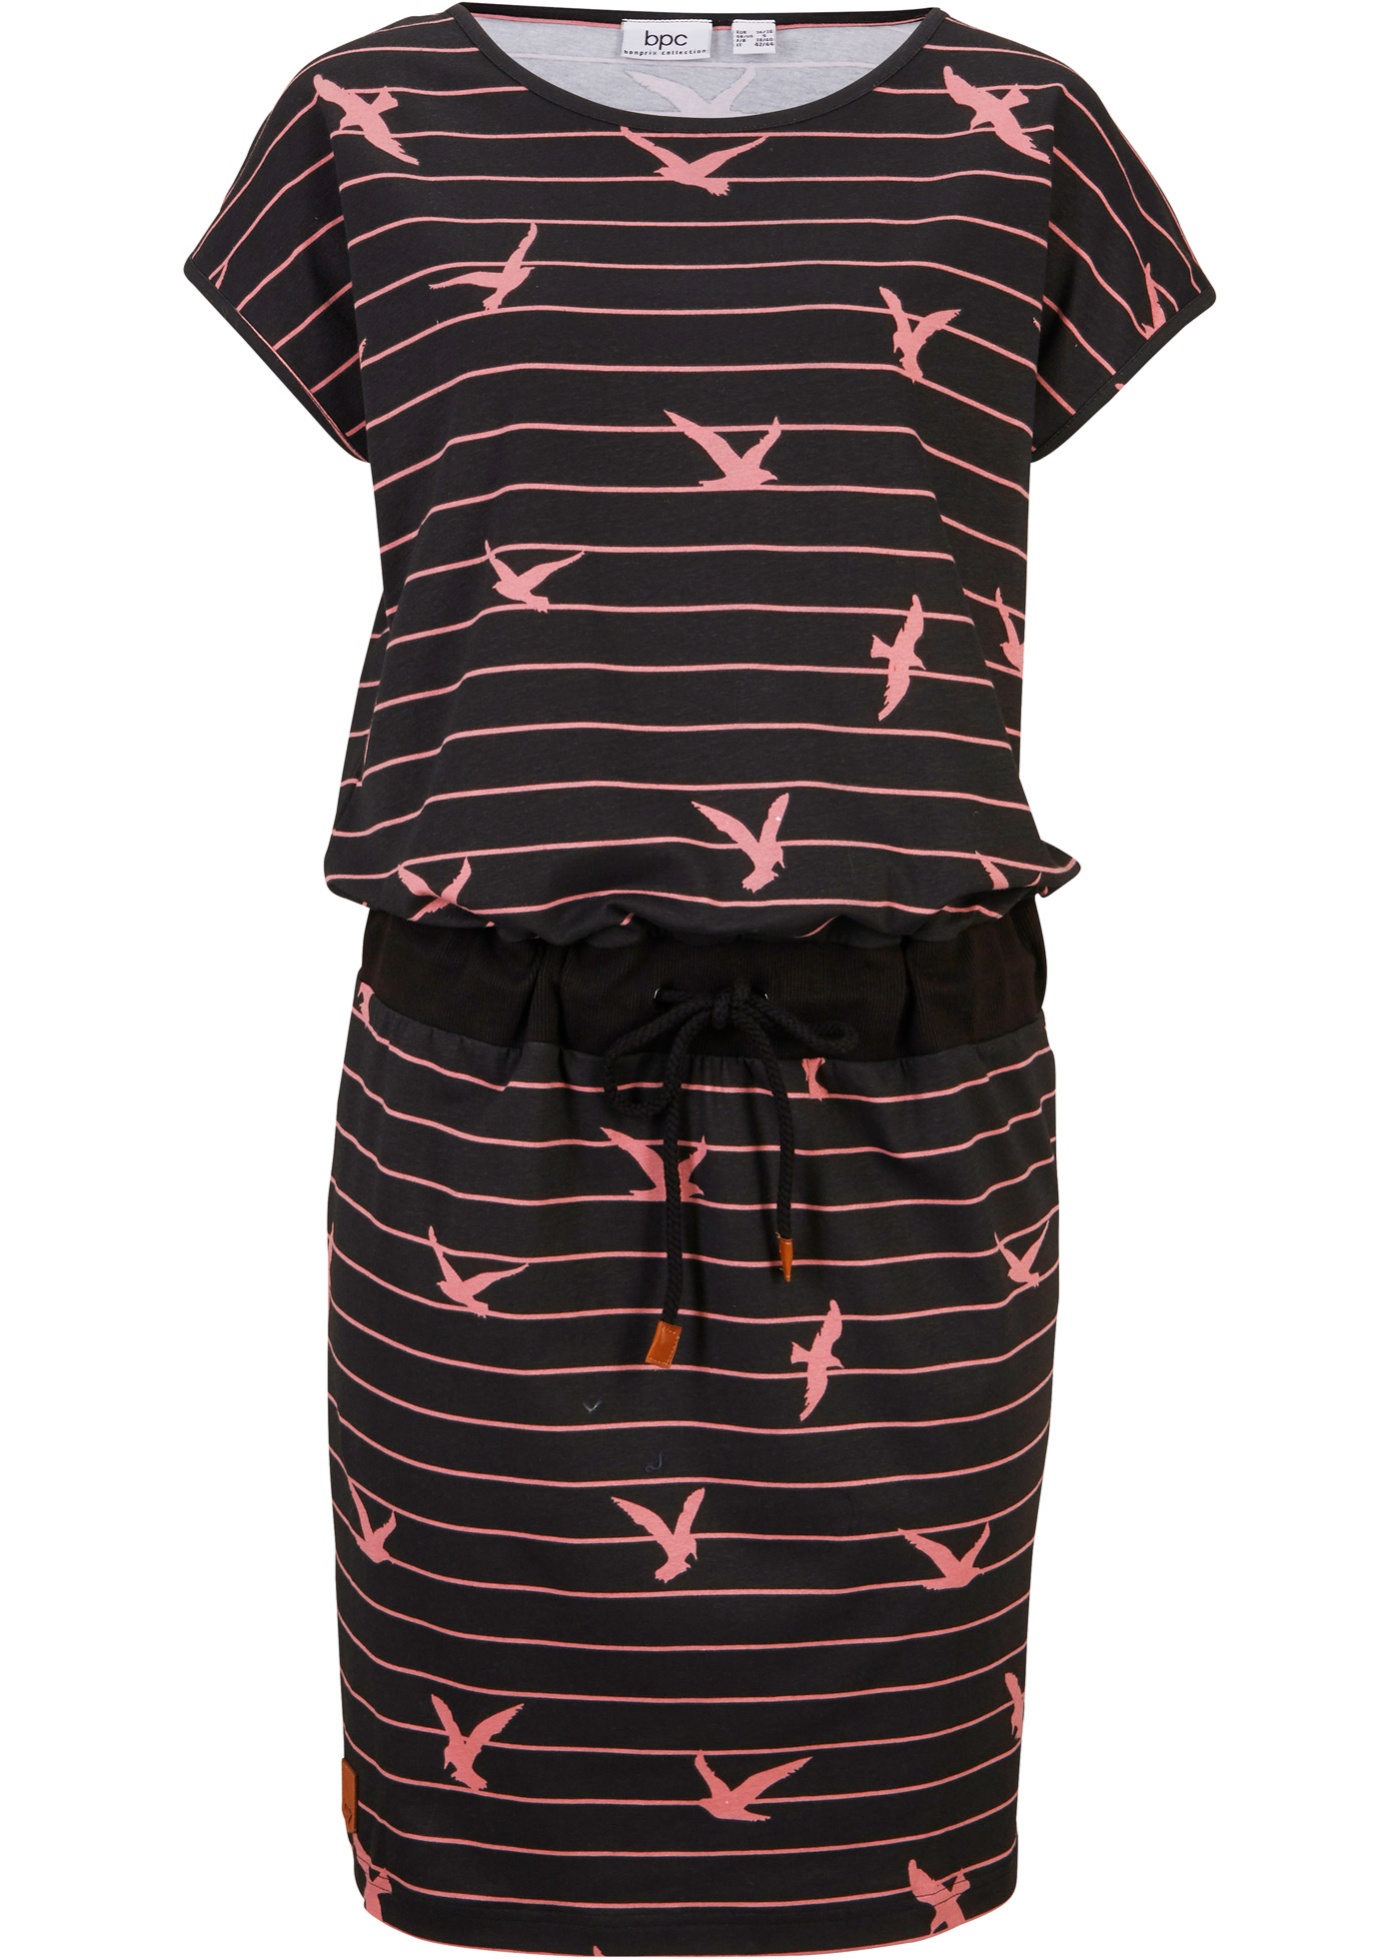 Gemütliches Kleid mit elastischem Bund in der Taille (95779881) in schwarz/rauchrose gestreift